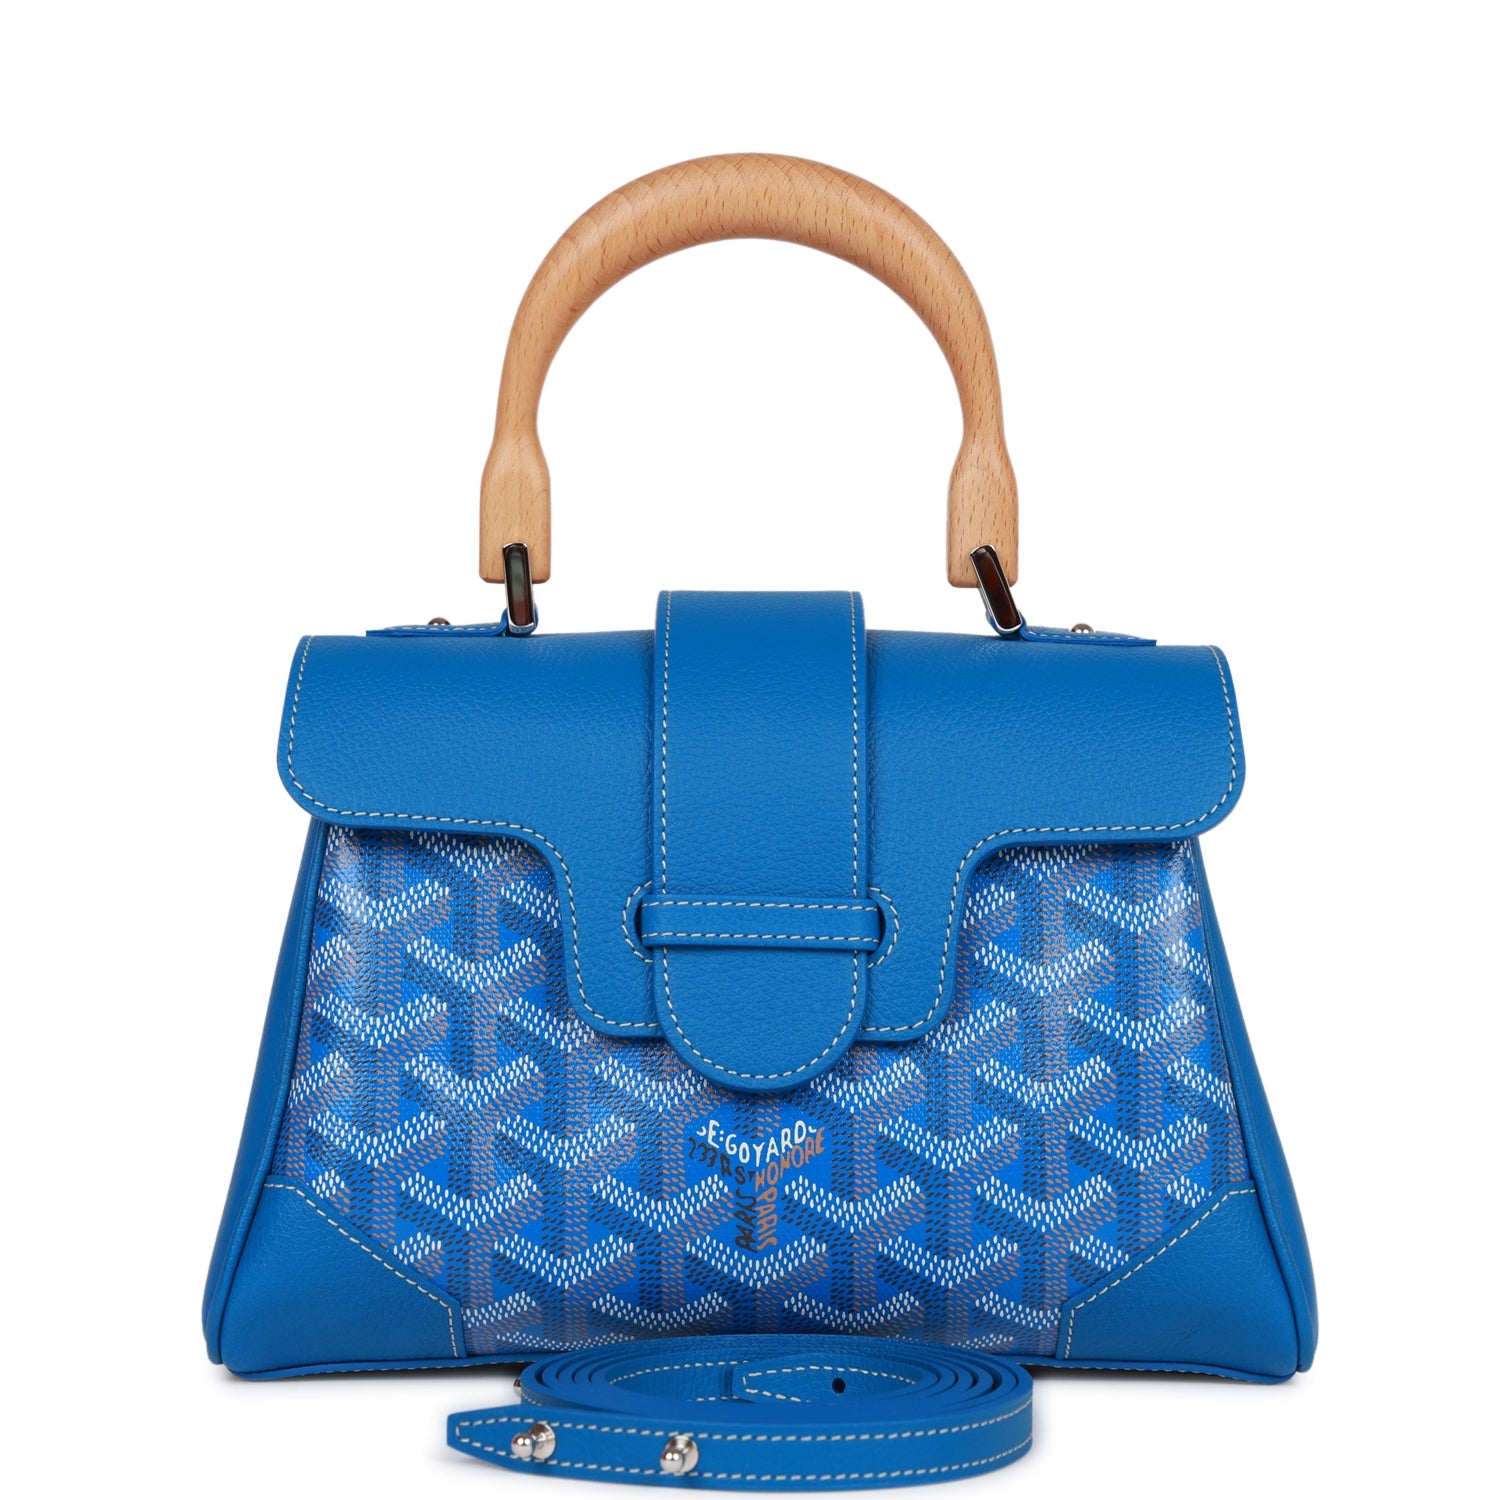 Goyard Goyardine Burgundy Boheme Hobo Bag Palladium Hardware – Madison  Avenue Couture